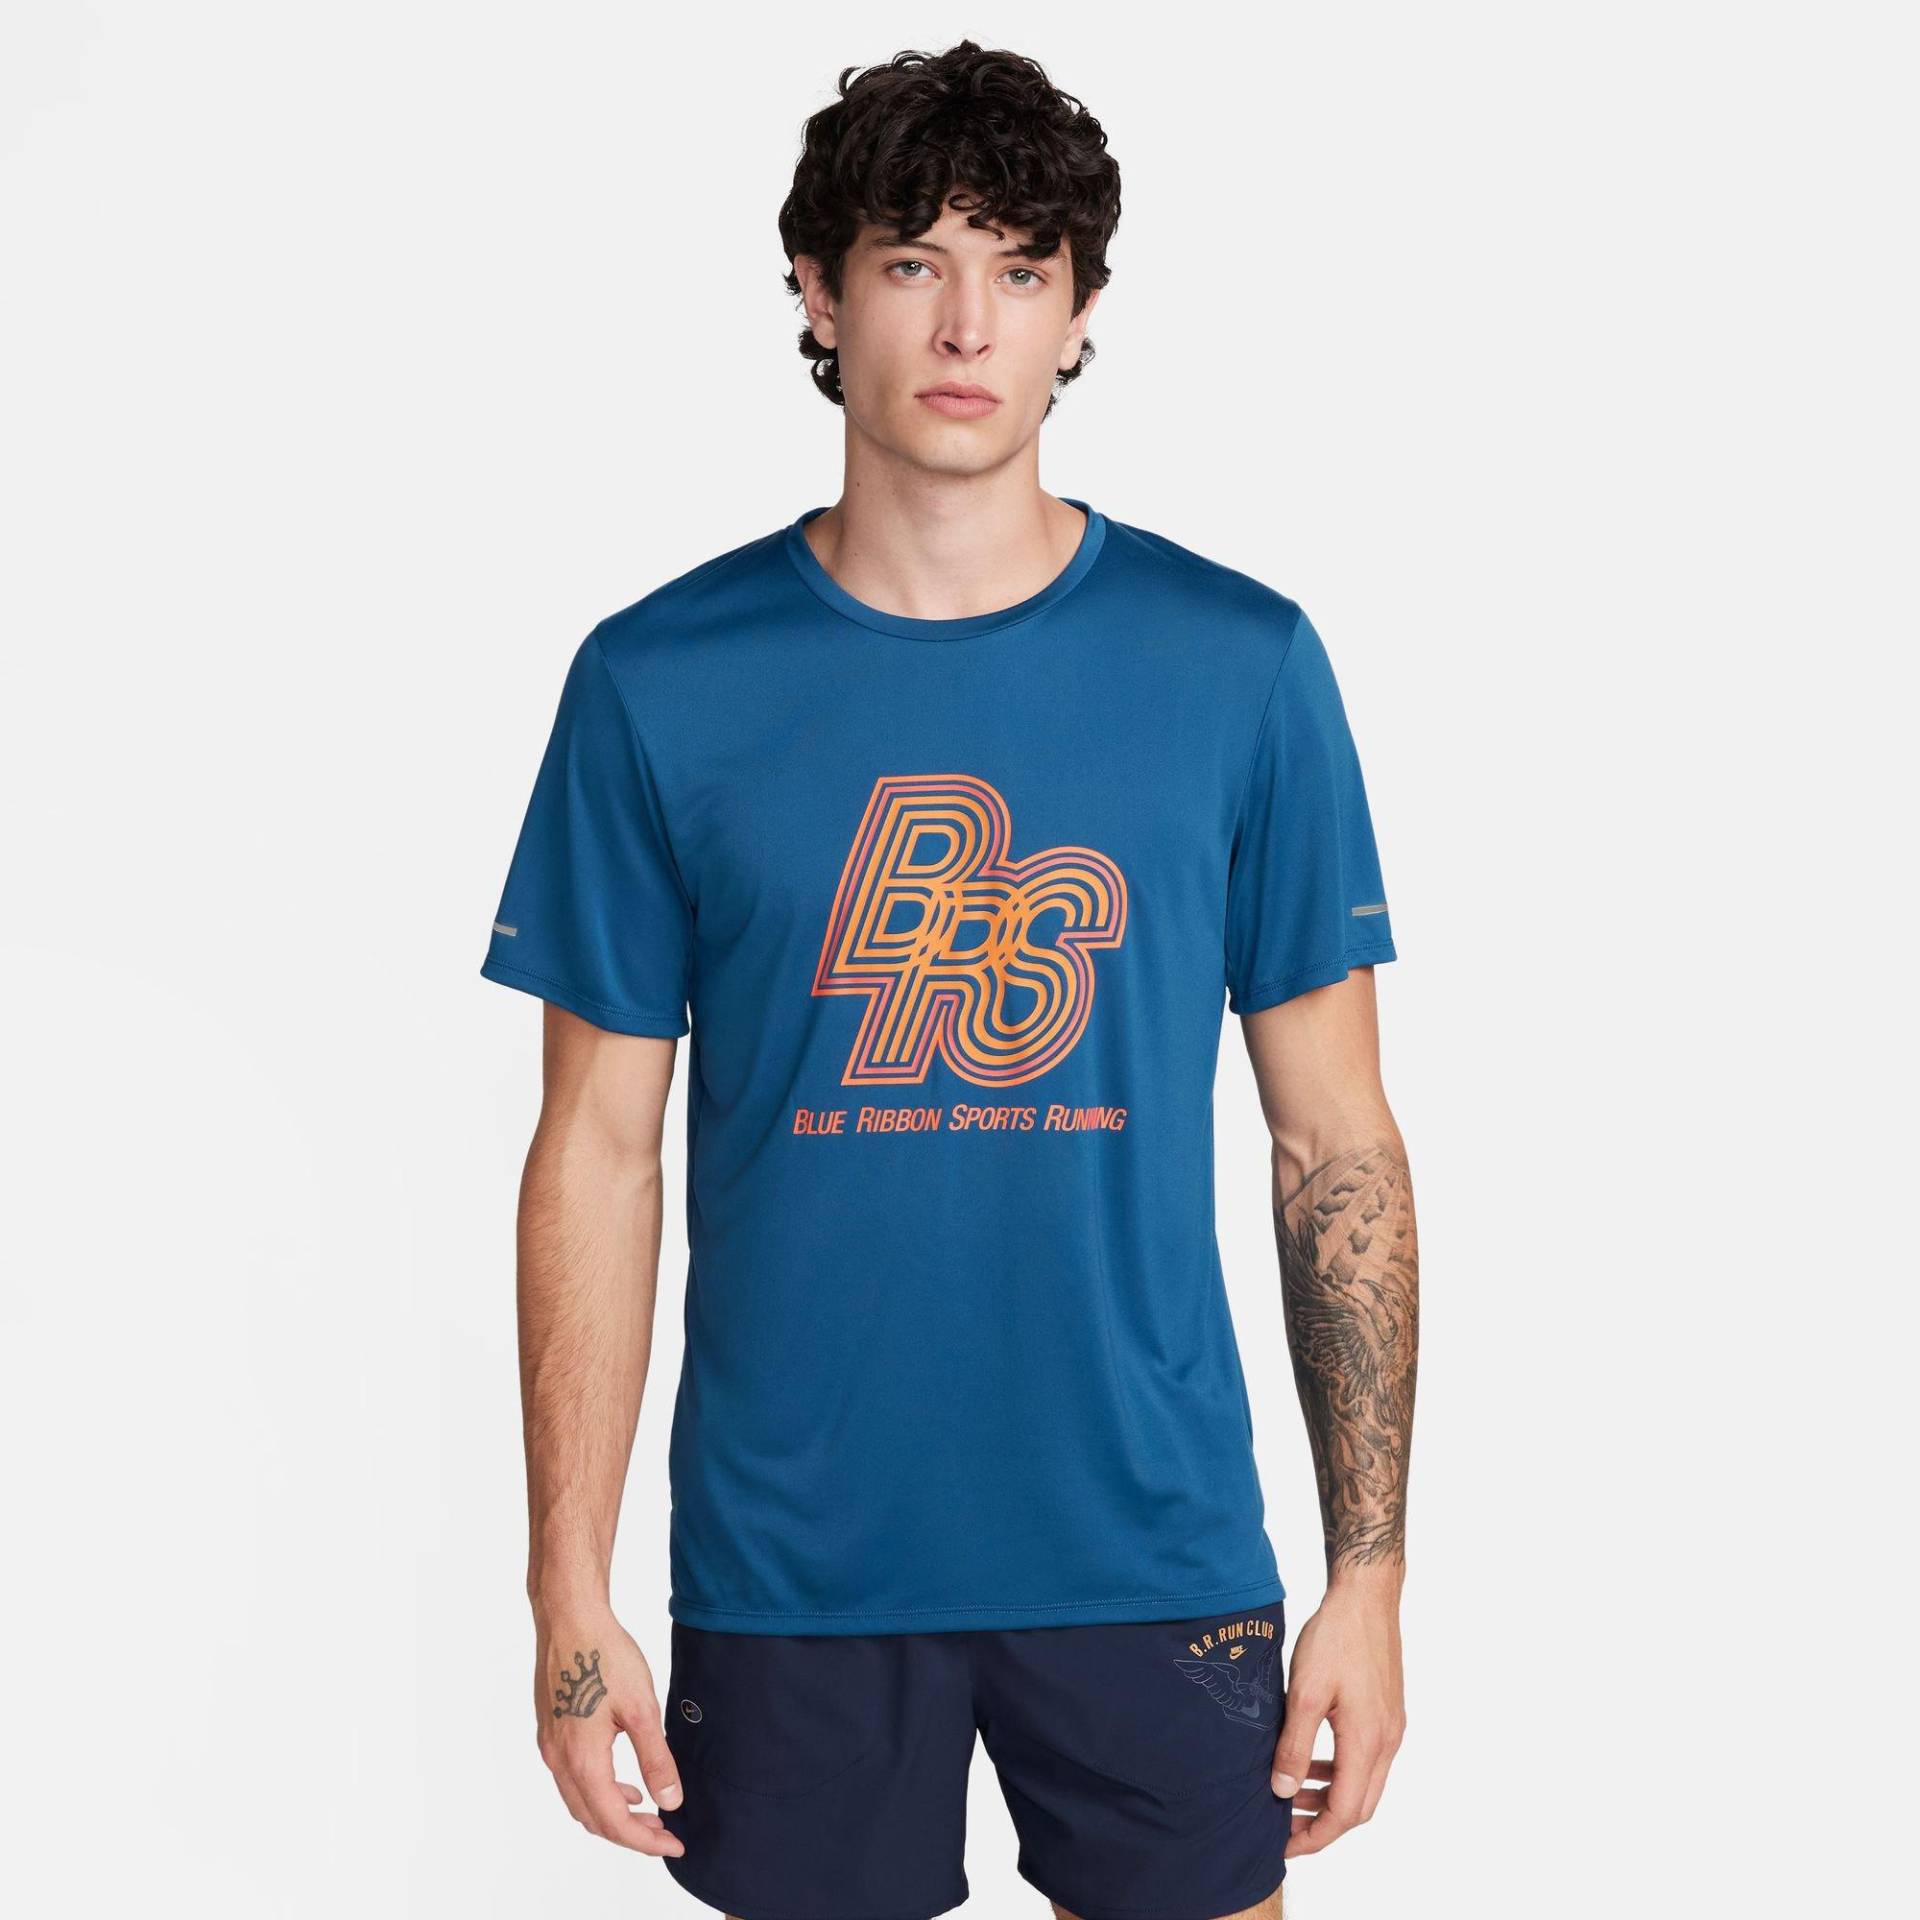 T-shirt, Rundhals, Kurzarm Herren Blau XL von NIKE